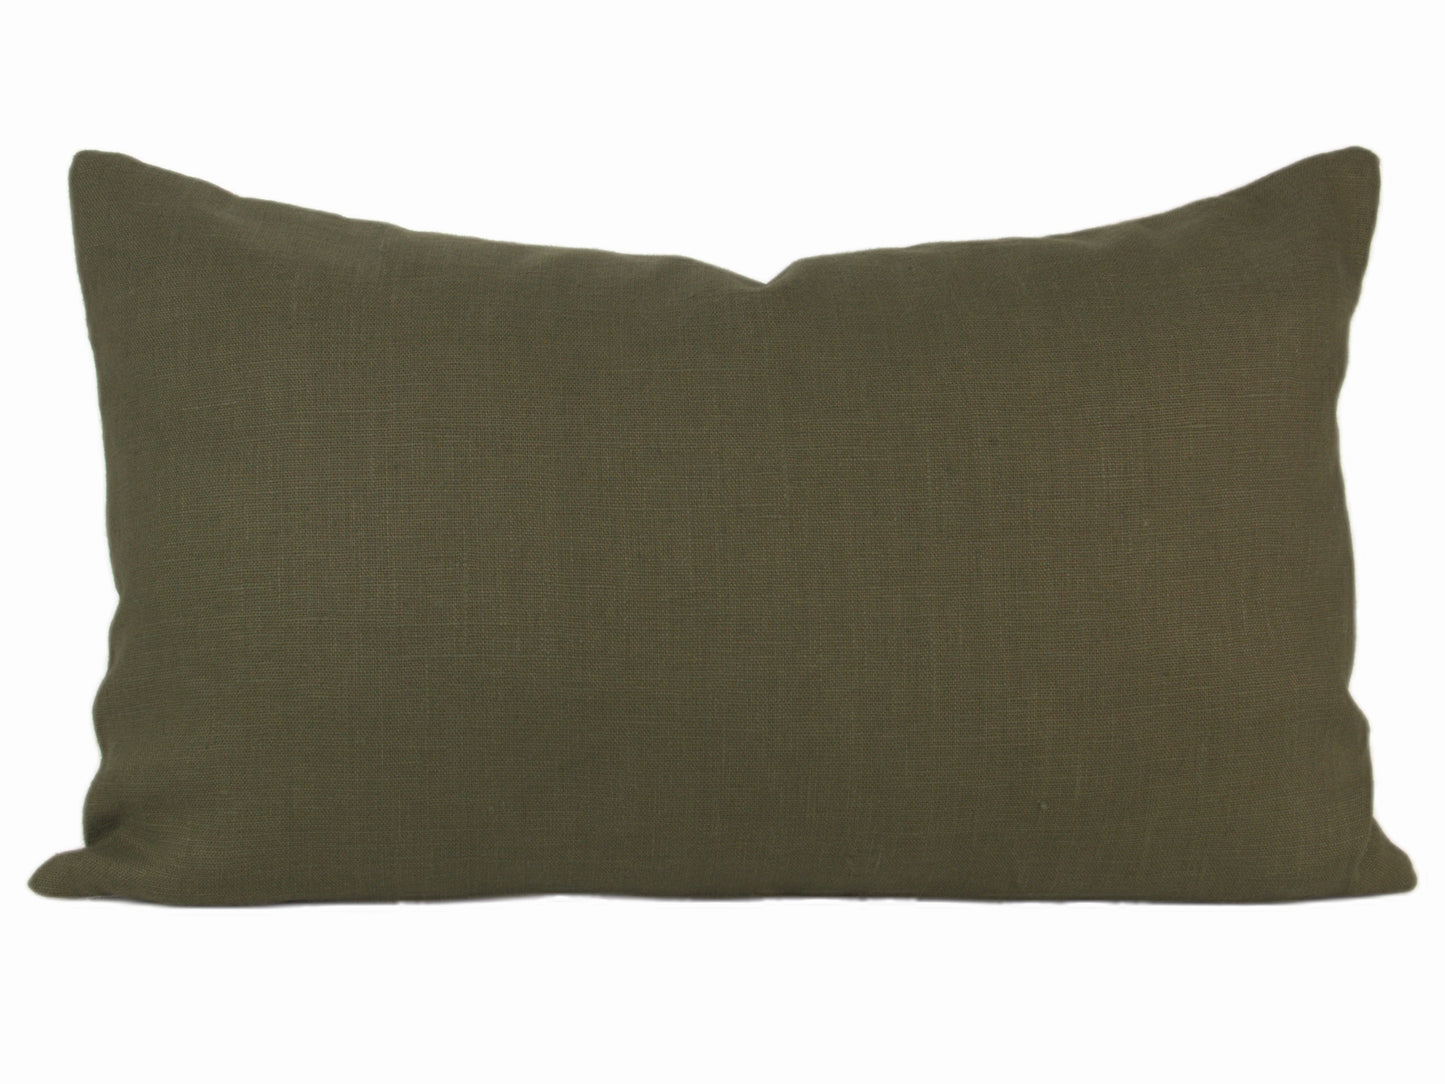 Juniper Green Linen Pillow Cover, 12x20" & 12x24" lumbar